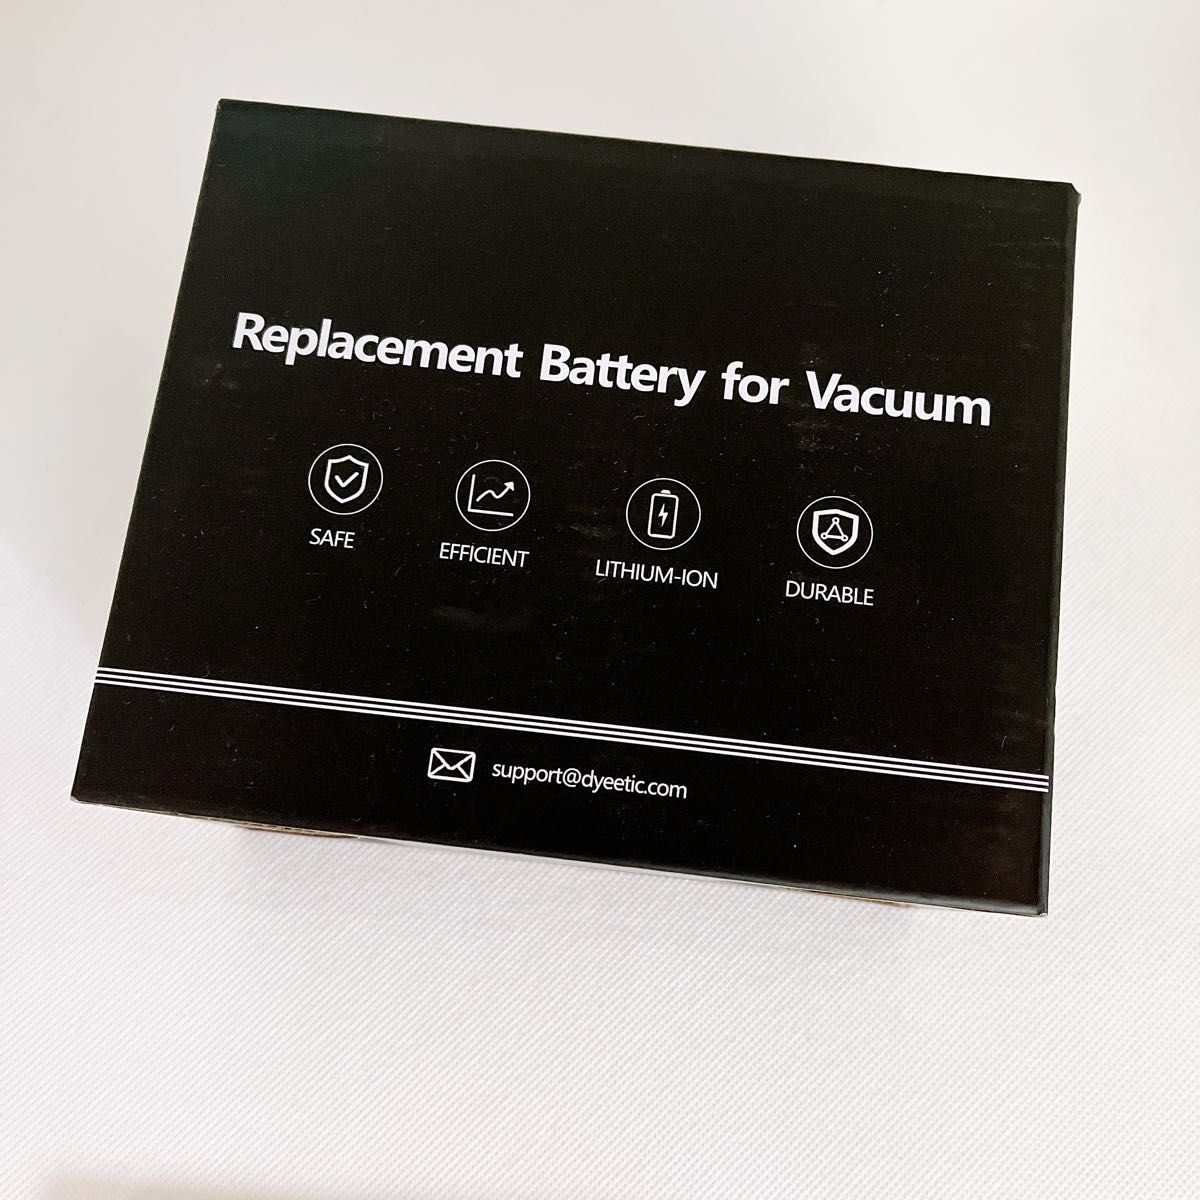 ダイソン バッテリー V7 SV11 掃除機用交換バッテリー 4000mAh PSEマークあり フィルター付き 互換品